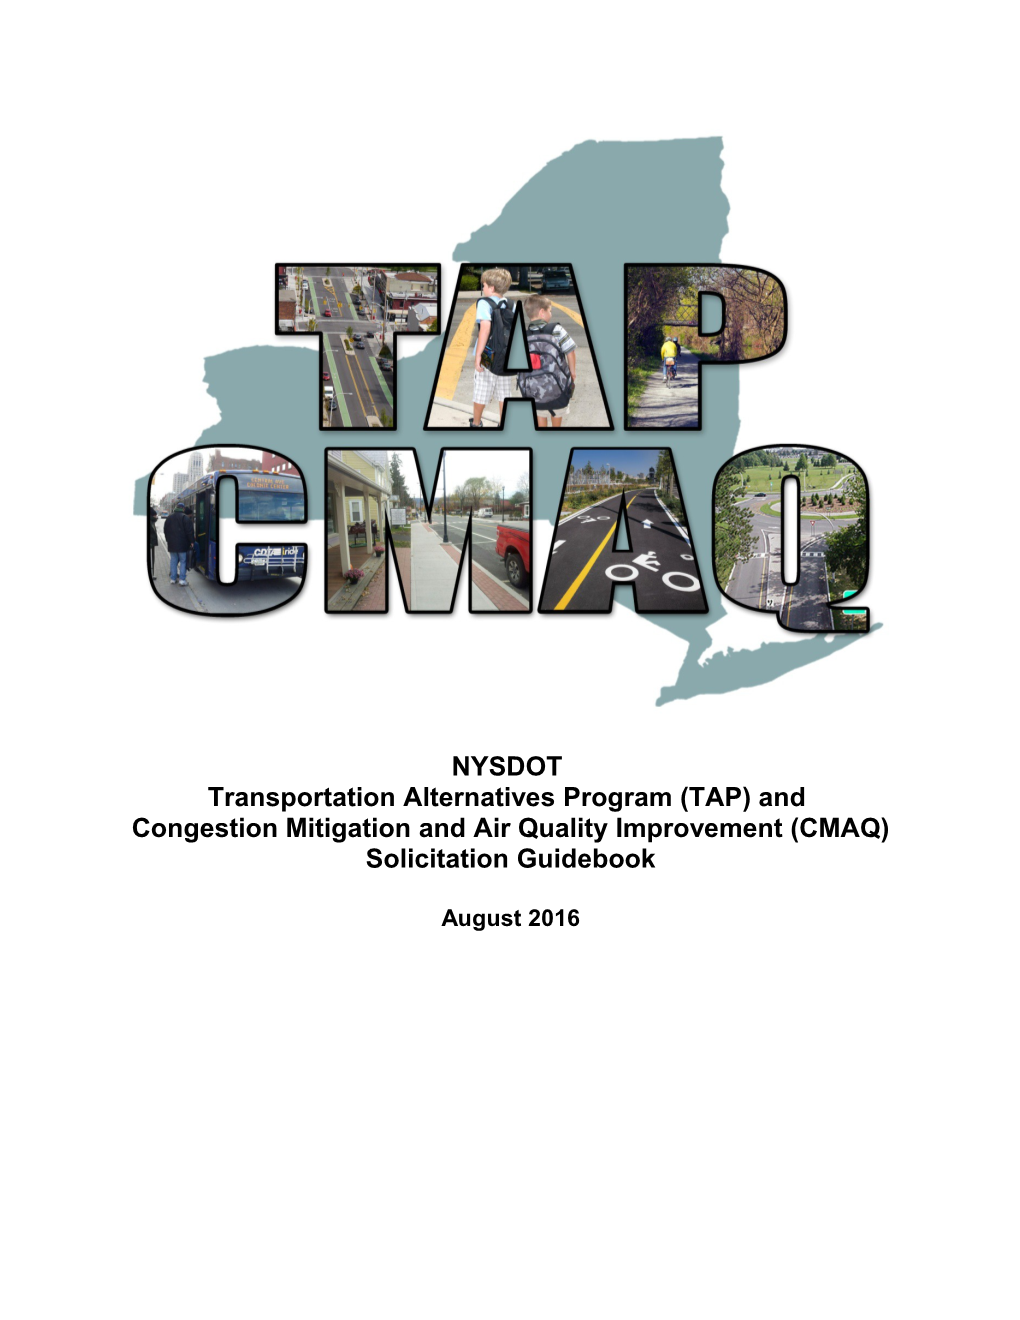 Transportation Alternatives Program (TAP) And